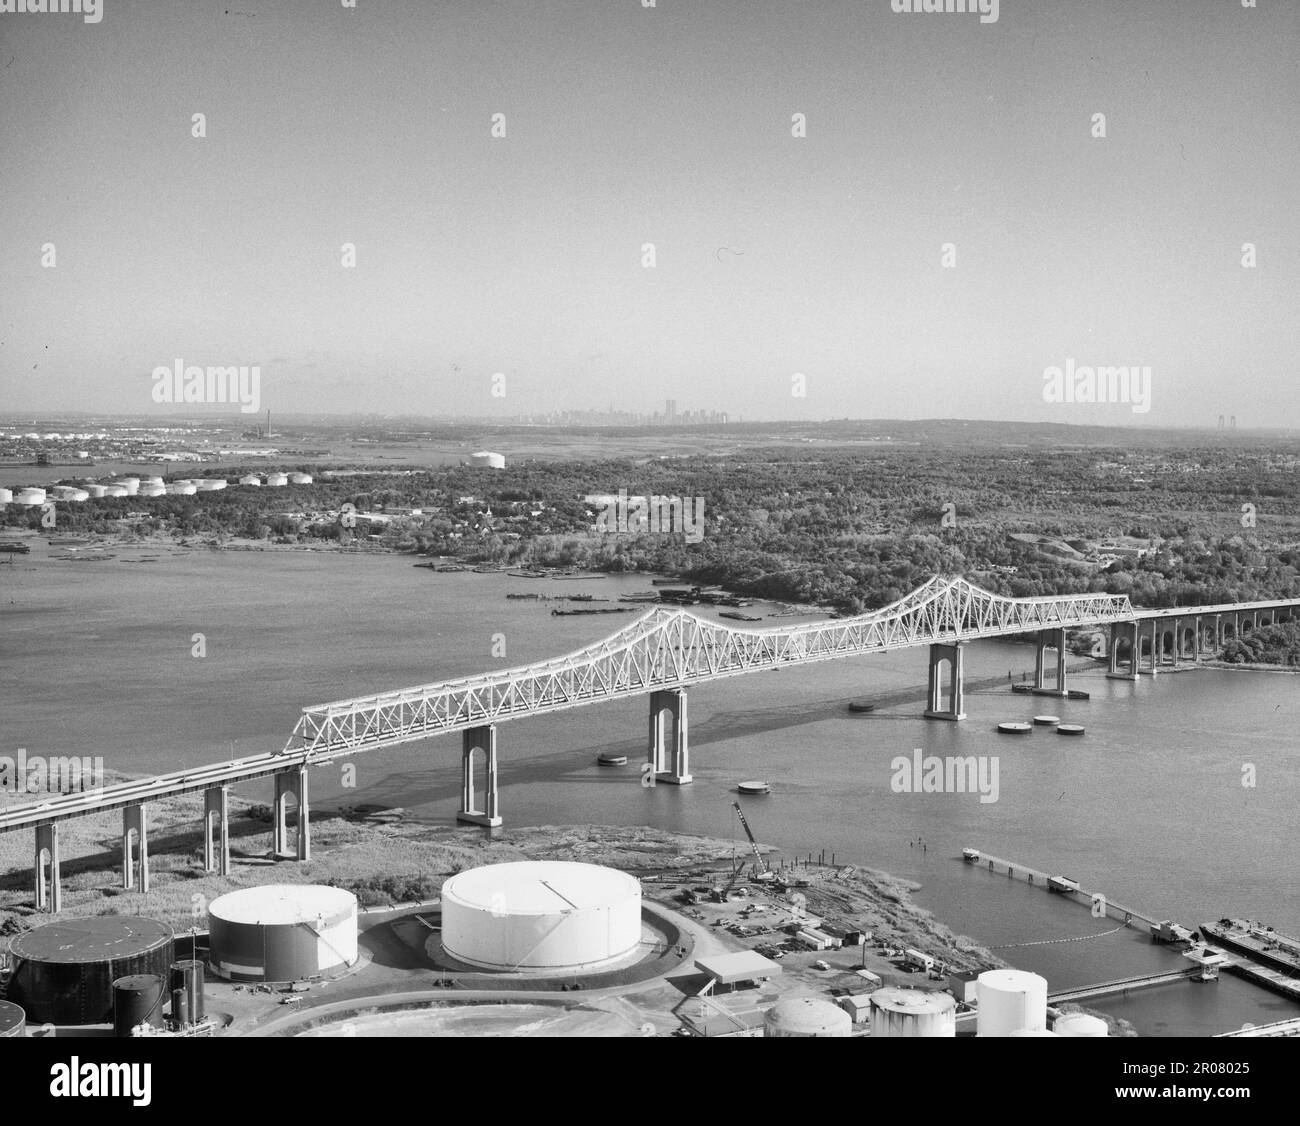 Pont d'Outerbridge traversant le pont aligné avec Manhattan Skyline au milieu de l'horizon, pont de Verrazano Narrows à droite - pont d'Outerbridge Crossing, longeant Arthur Kill du New Jersey à Staten Island, Staten Island (subdivision), comté de Richmond, NY, 1991 Banque D'Images